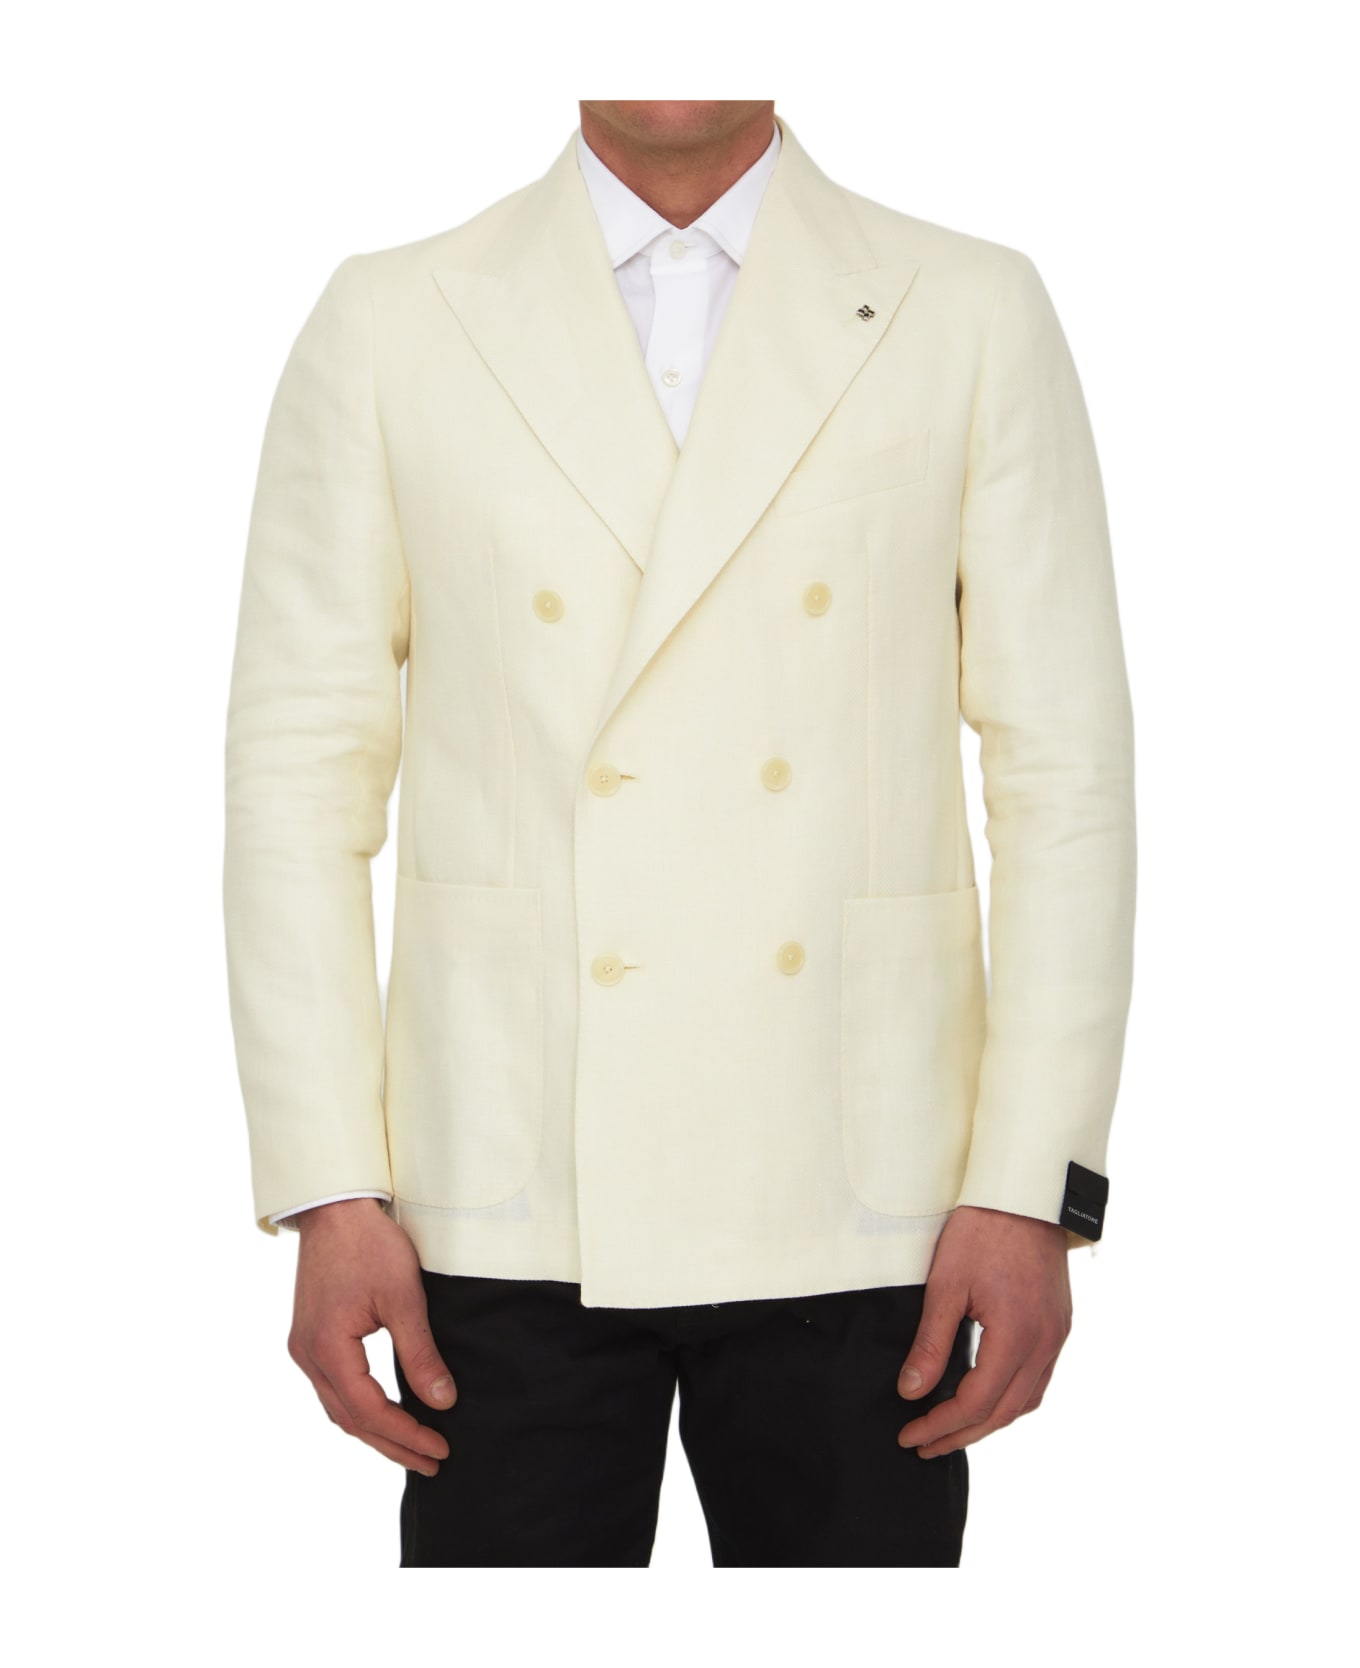 Tagliatore Cream-colored Double-breasted Jacket - CREAM ブレザー